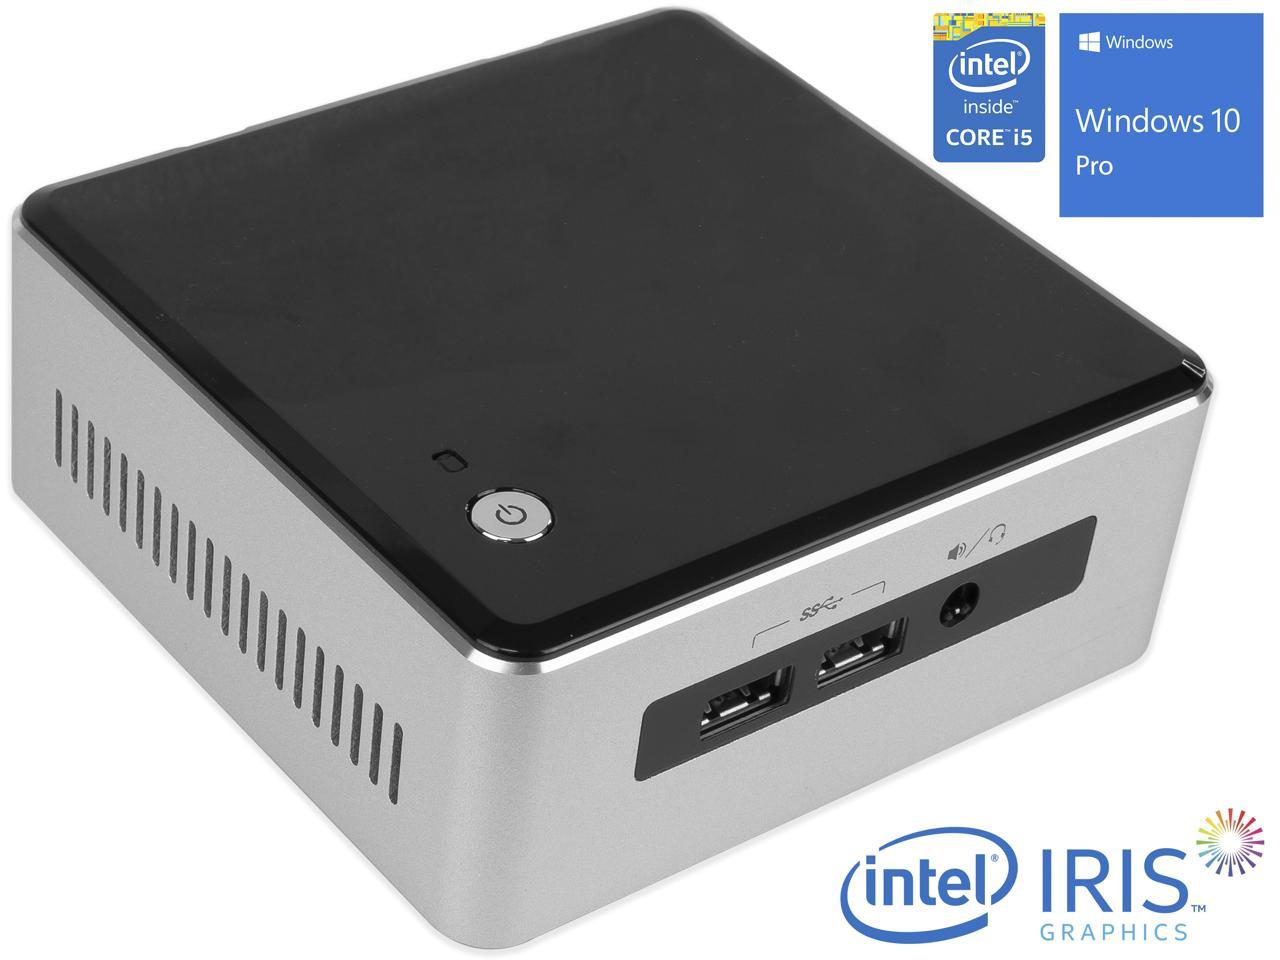 Intel NUC5i5RYH Mini PC, Intel Core i5-5250U Upto 2.7GHz, 16GB RAM, 256GB NVMe SSD + 1TB HDD, Micro HDMI, Mini DisplayPort, Wi-Fi, Bluetooth, Windows 10 Pro